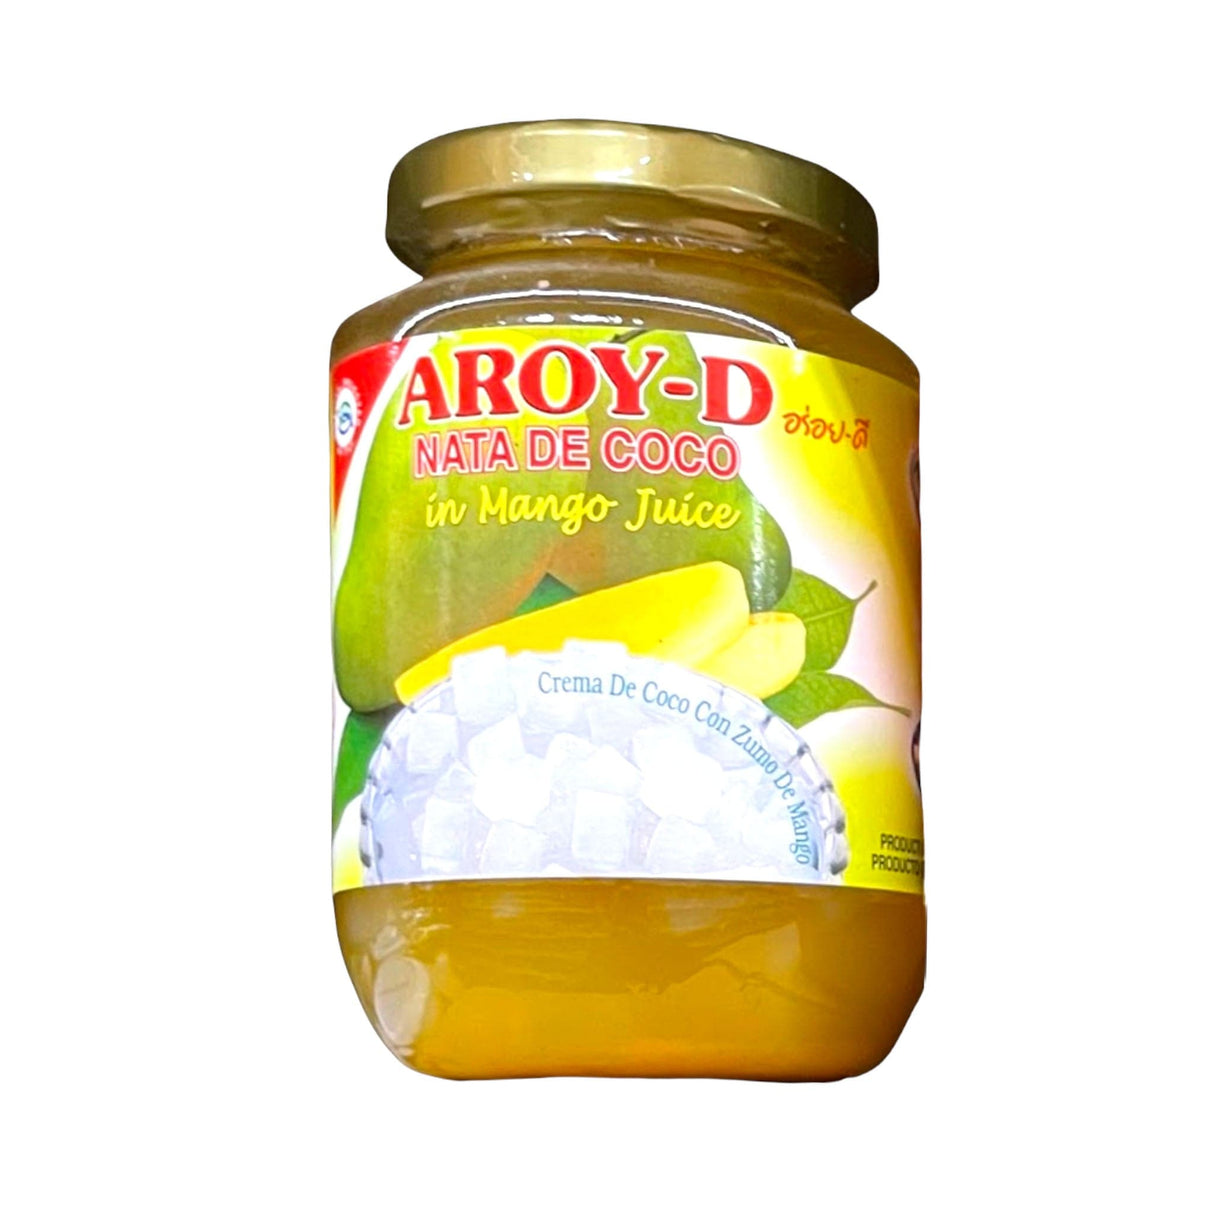 Aroy-d Nata de Coco in Mango Juice